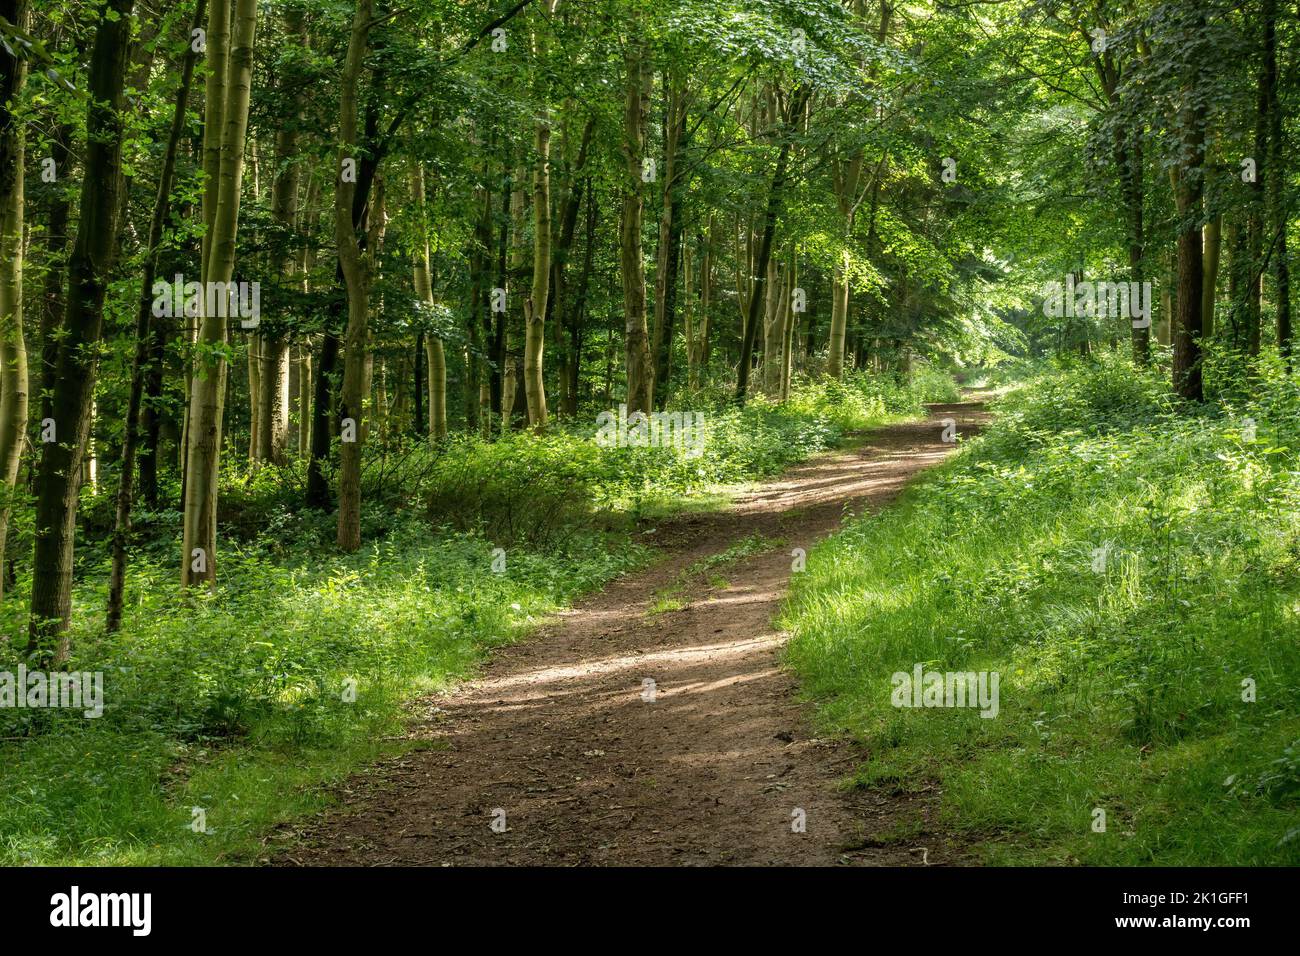 Le sentier de randonnée de Leicestershire Round / Jubilee Way / 10th Battalion Trail passe à travers les bois verts en dessous de Burrugh Hill, Leicestershire, Angleterre, Royaume-Uni Banque D'Images